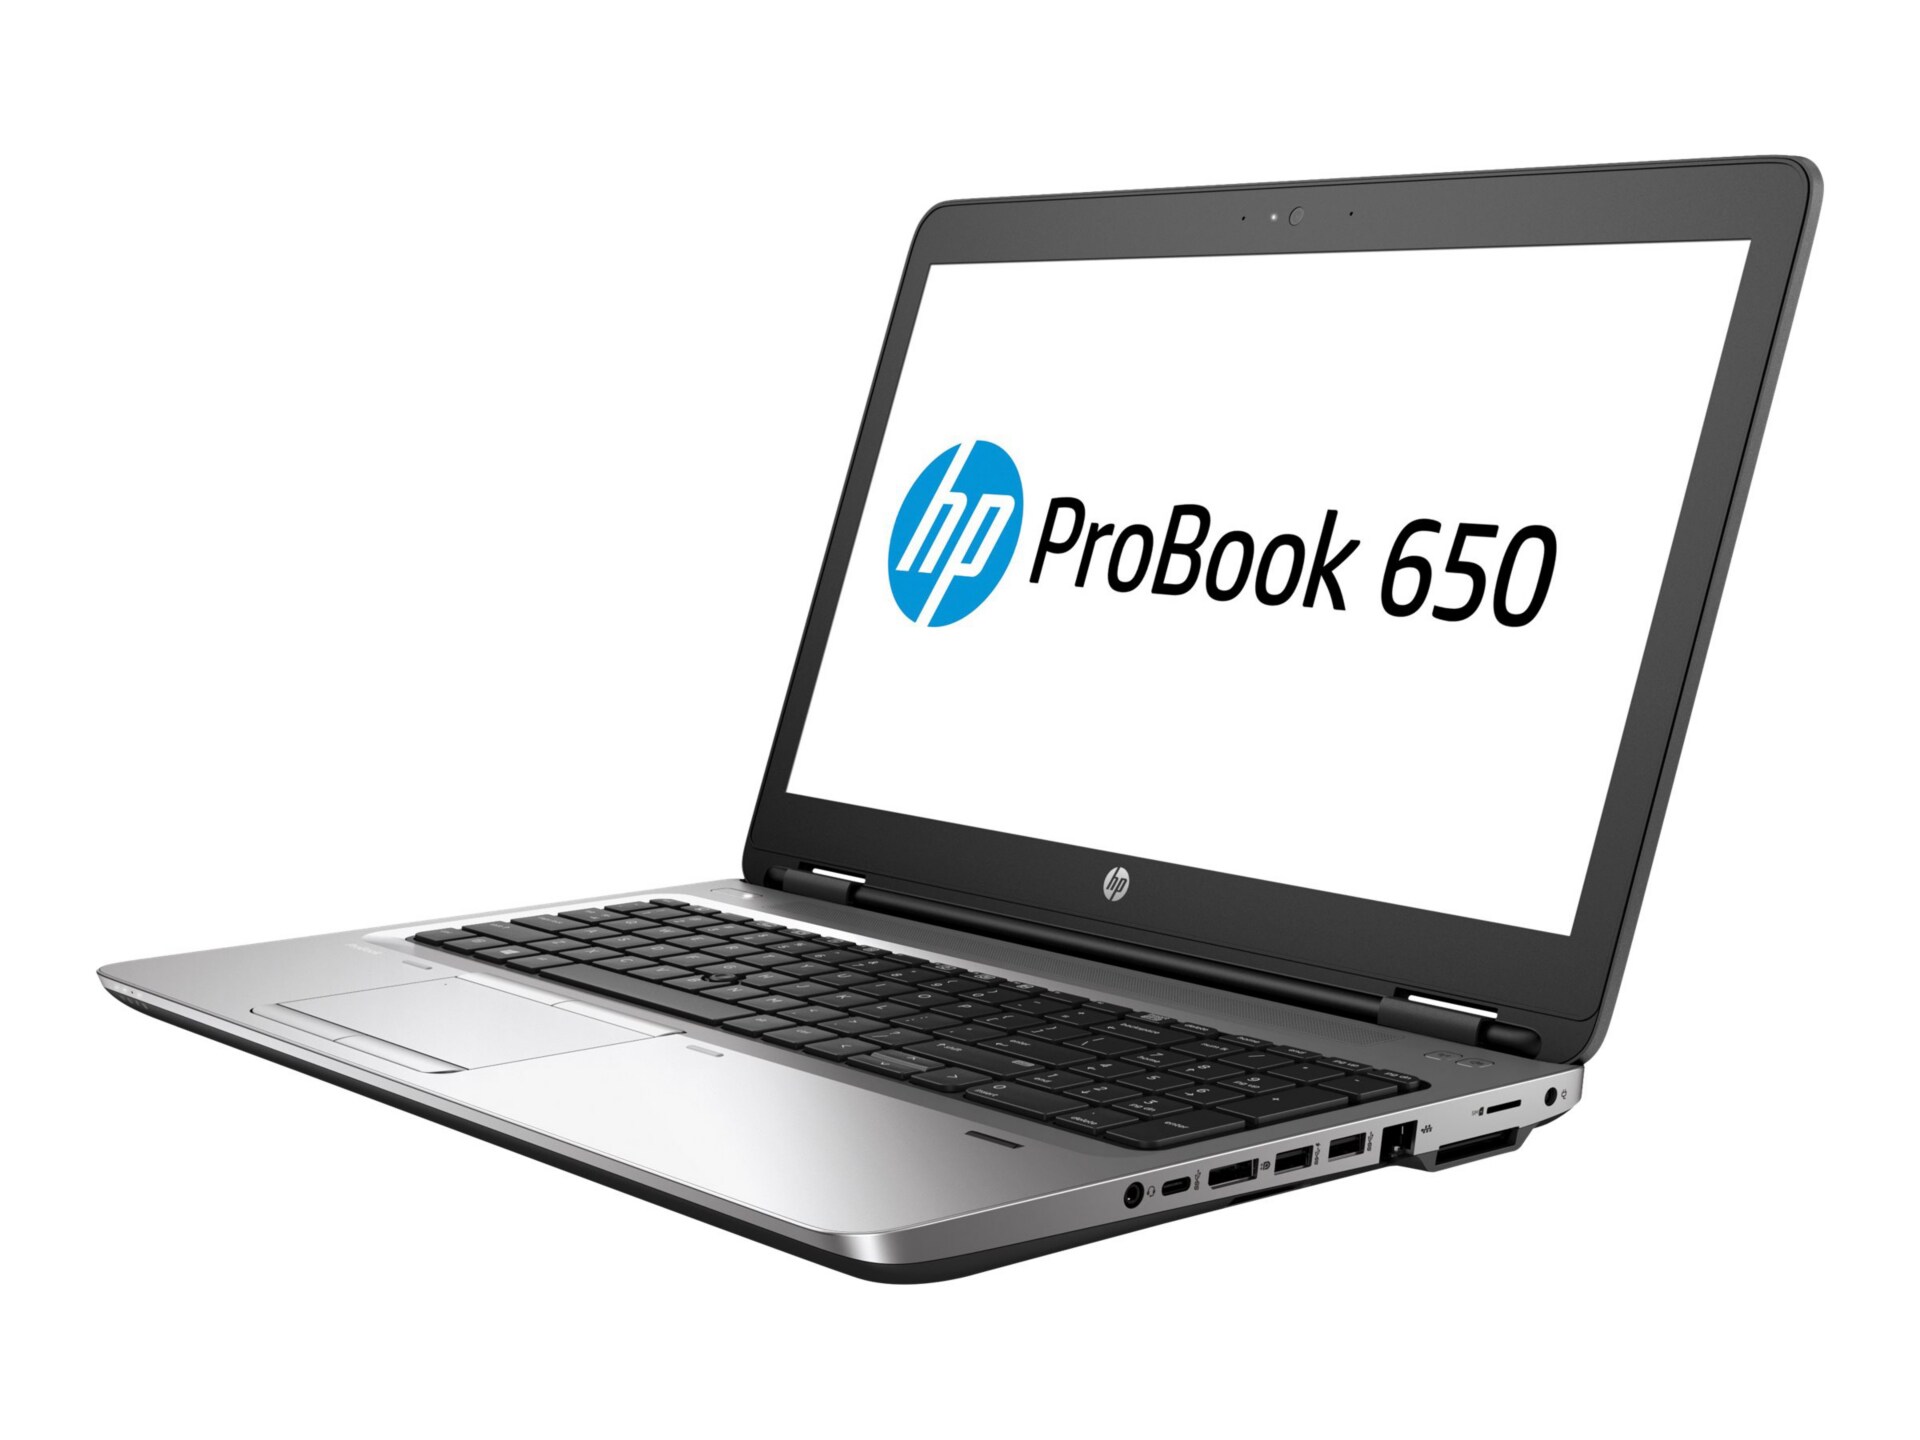 HP ProBook 650 G2 - 15.6" - Core i7 6600U - 8 GB RAM - 256 GB SSD - US